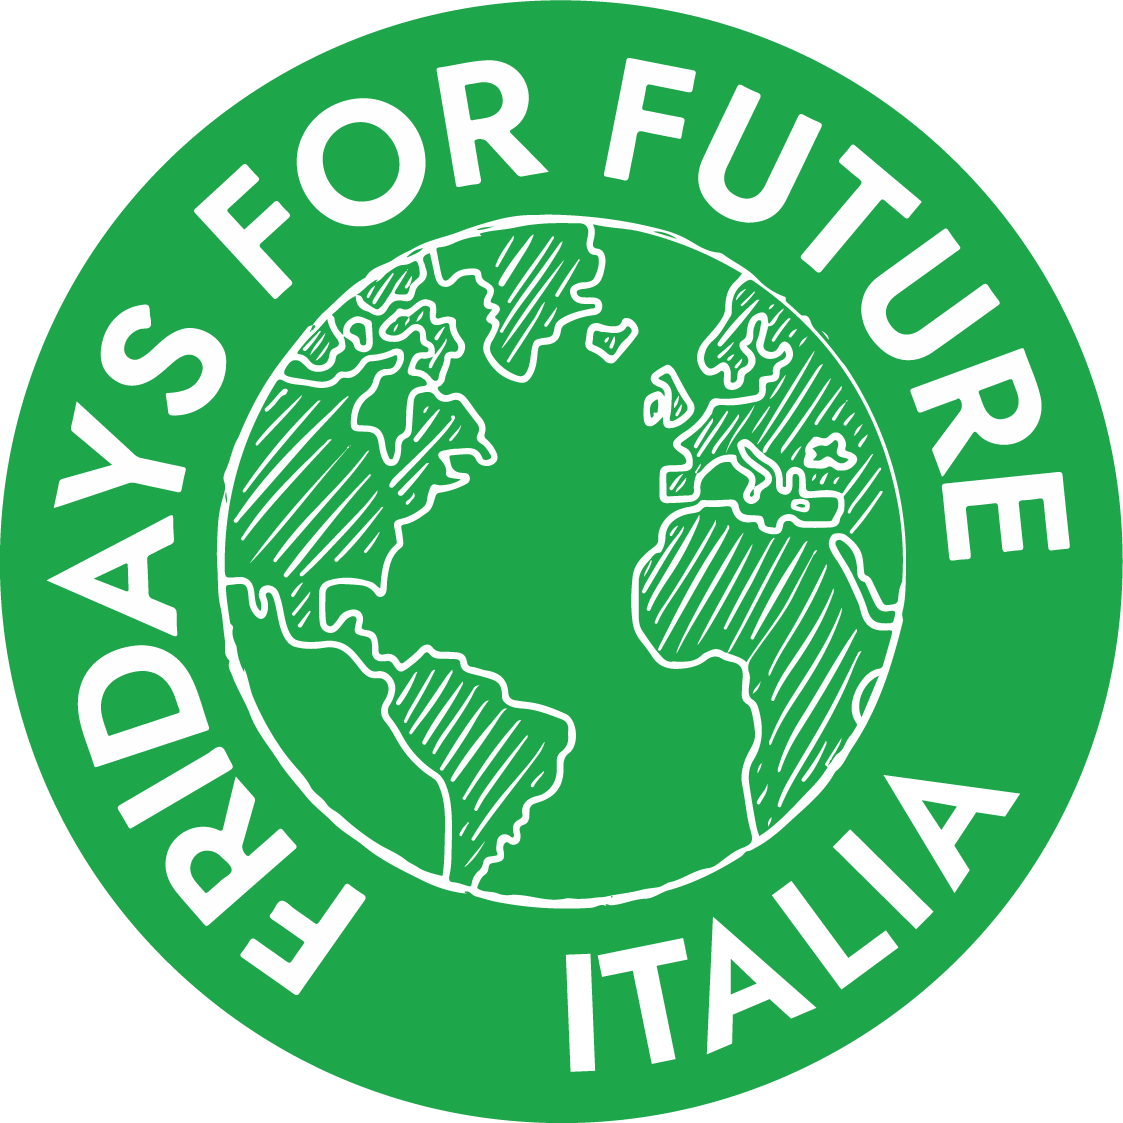 Venerdì 24 settembre lo Sciopero Globale del Clima dei Fridays for Future